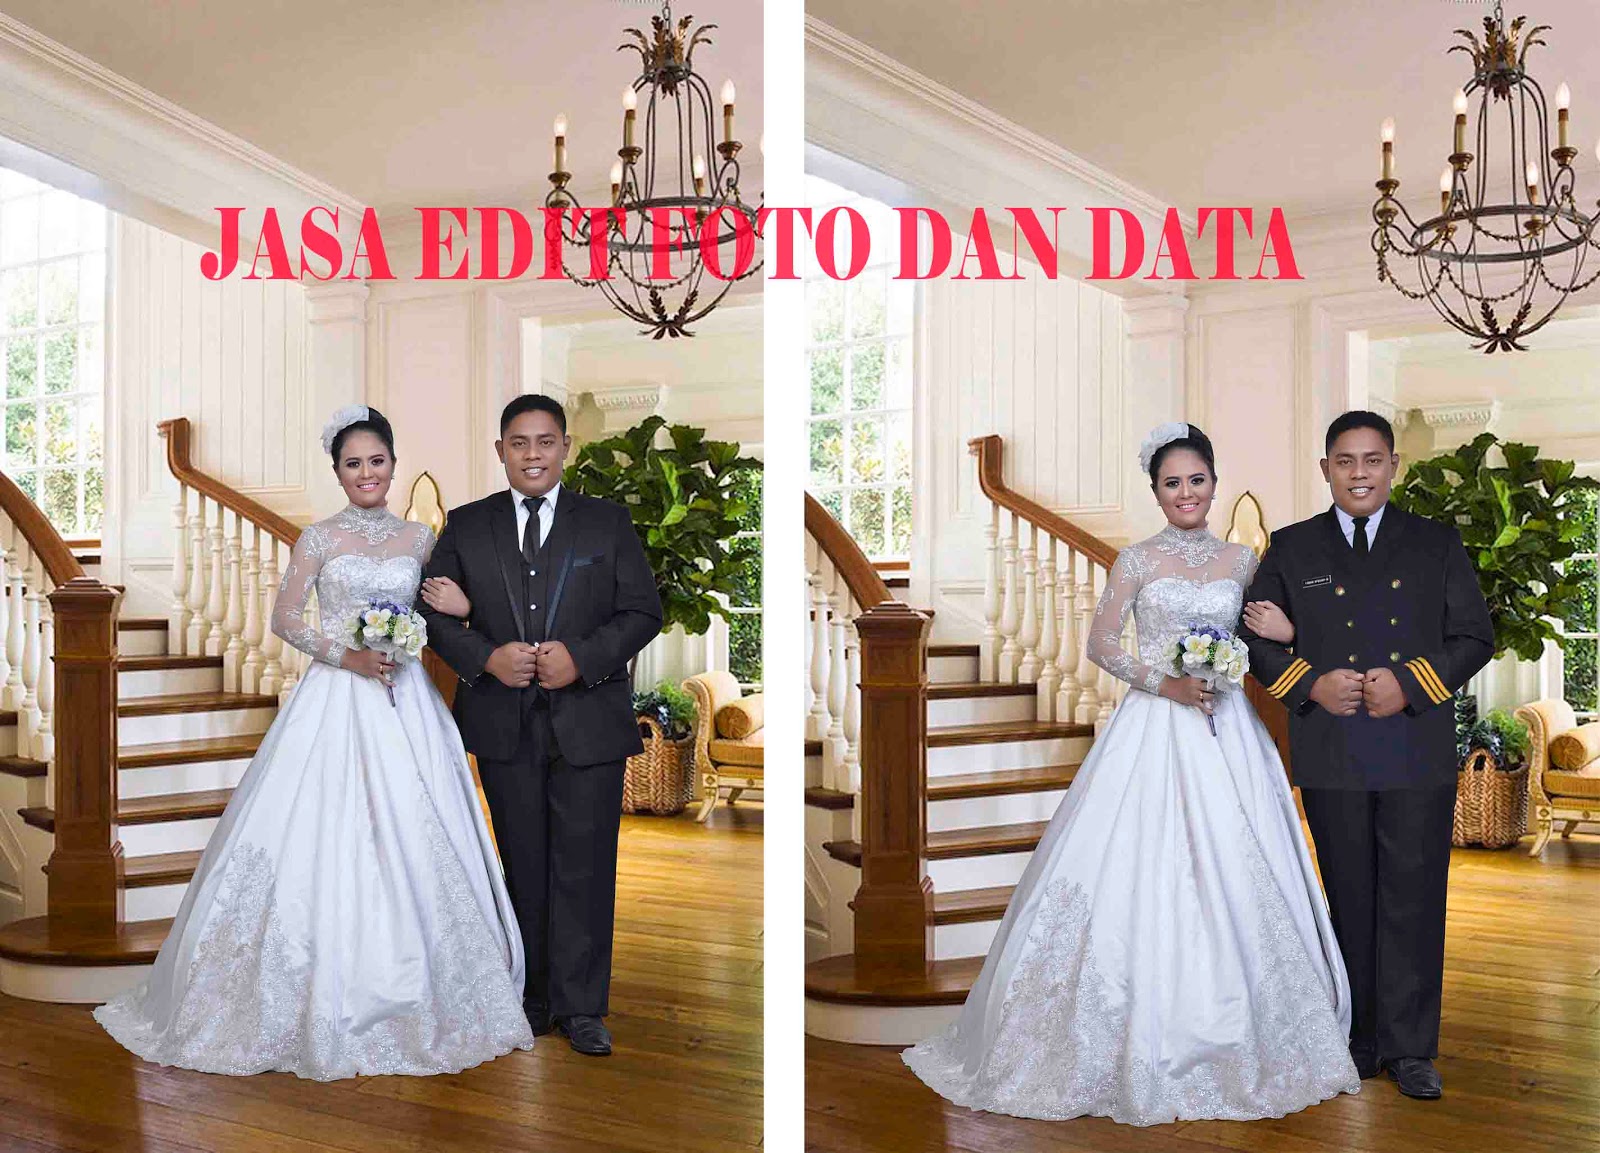 TOKO OPIK Jasa Edit Foto Dan Data Galeri Foto Wedding Dan